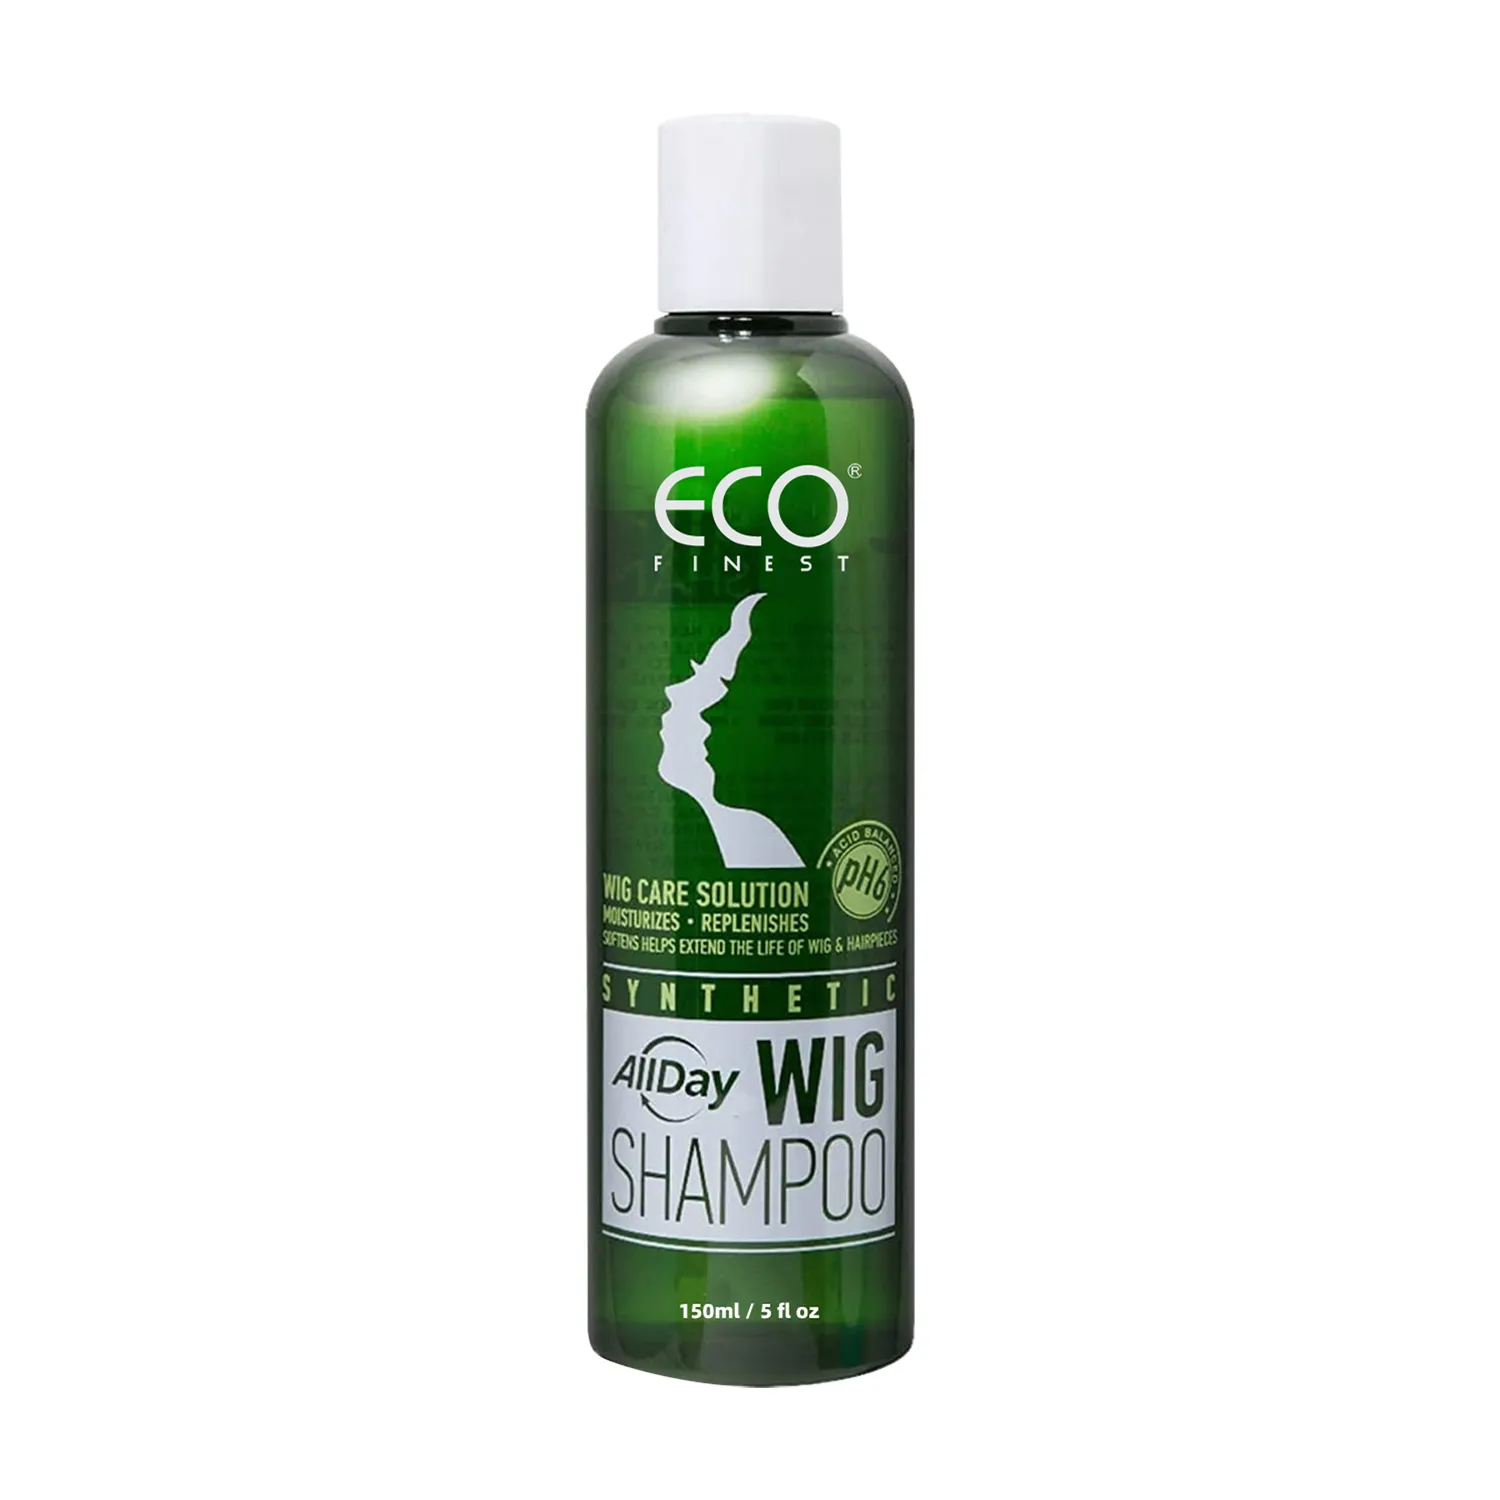 Locks Synthetic Perücke Shampoo | Revit alisiert und erfrischt | Reinigt und verlängert die Lebensdauer von Perücken und Haar teilen-739231